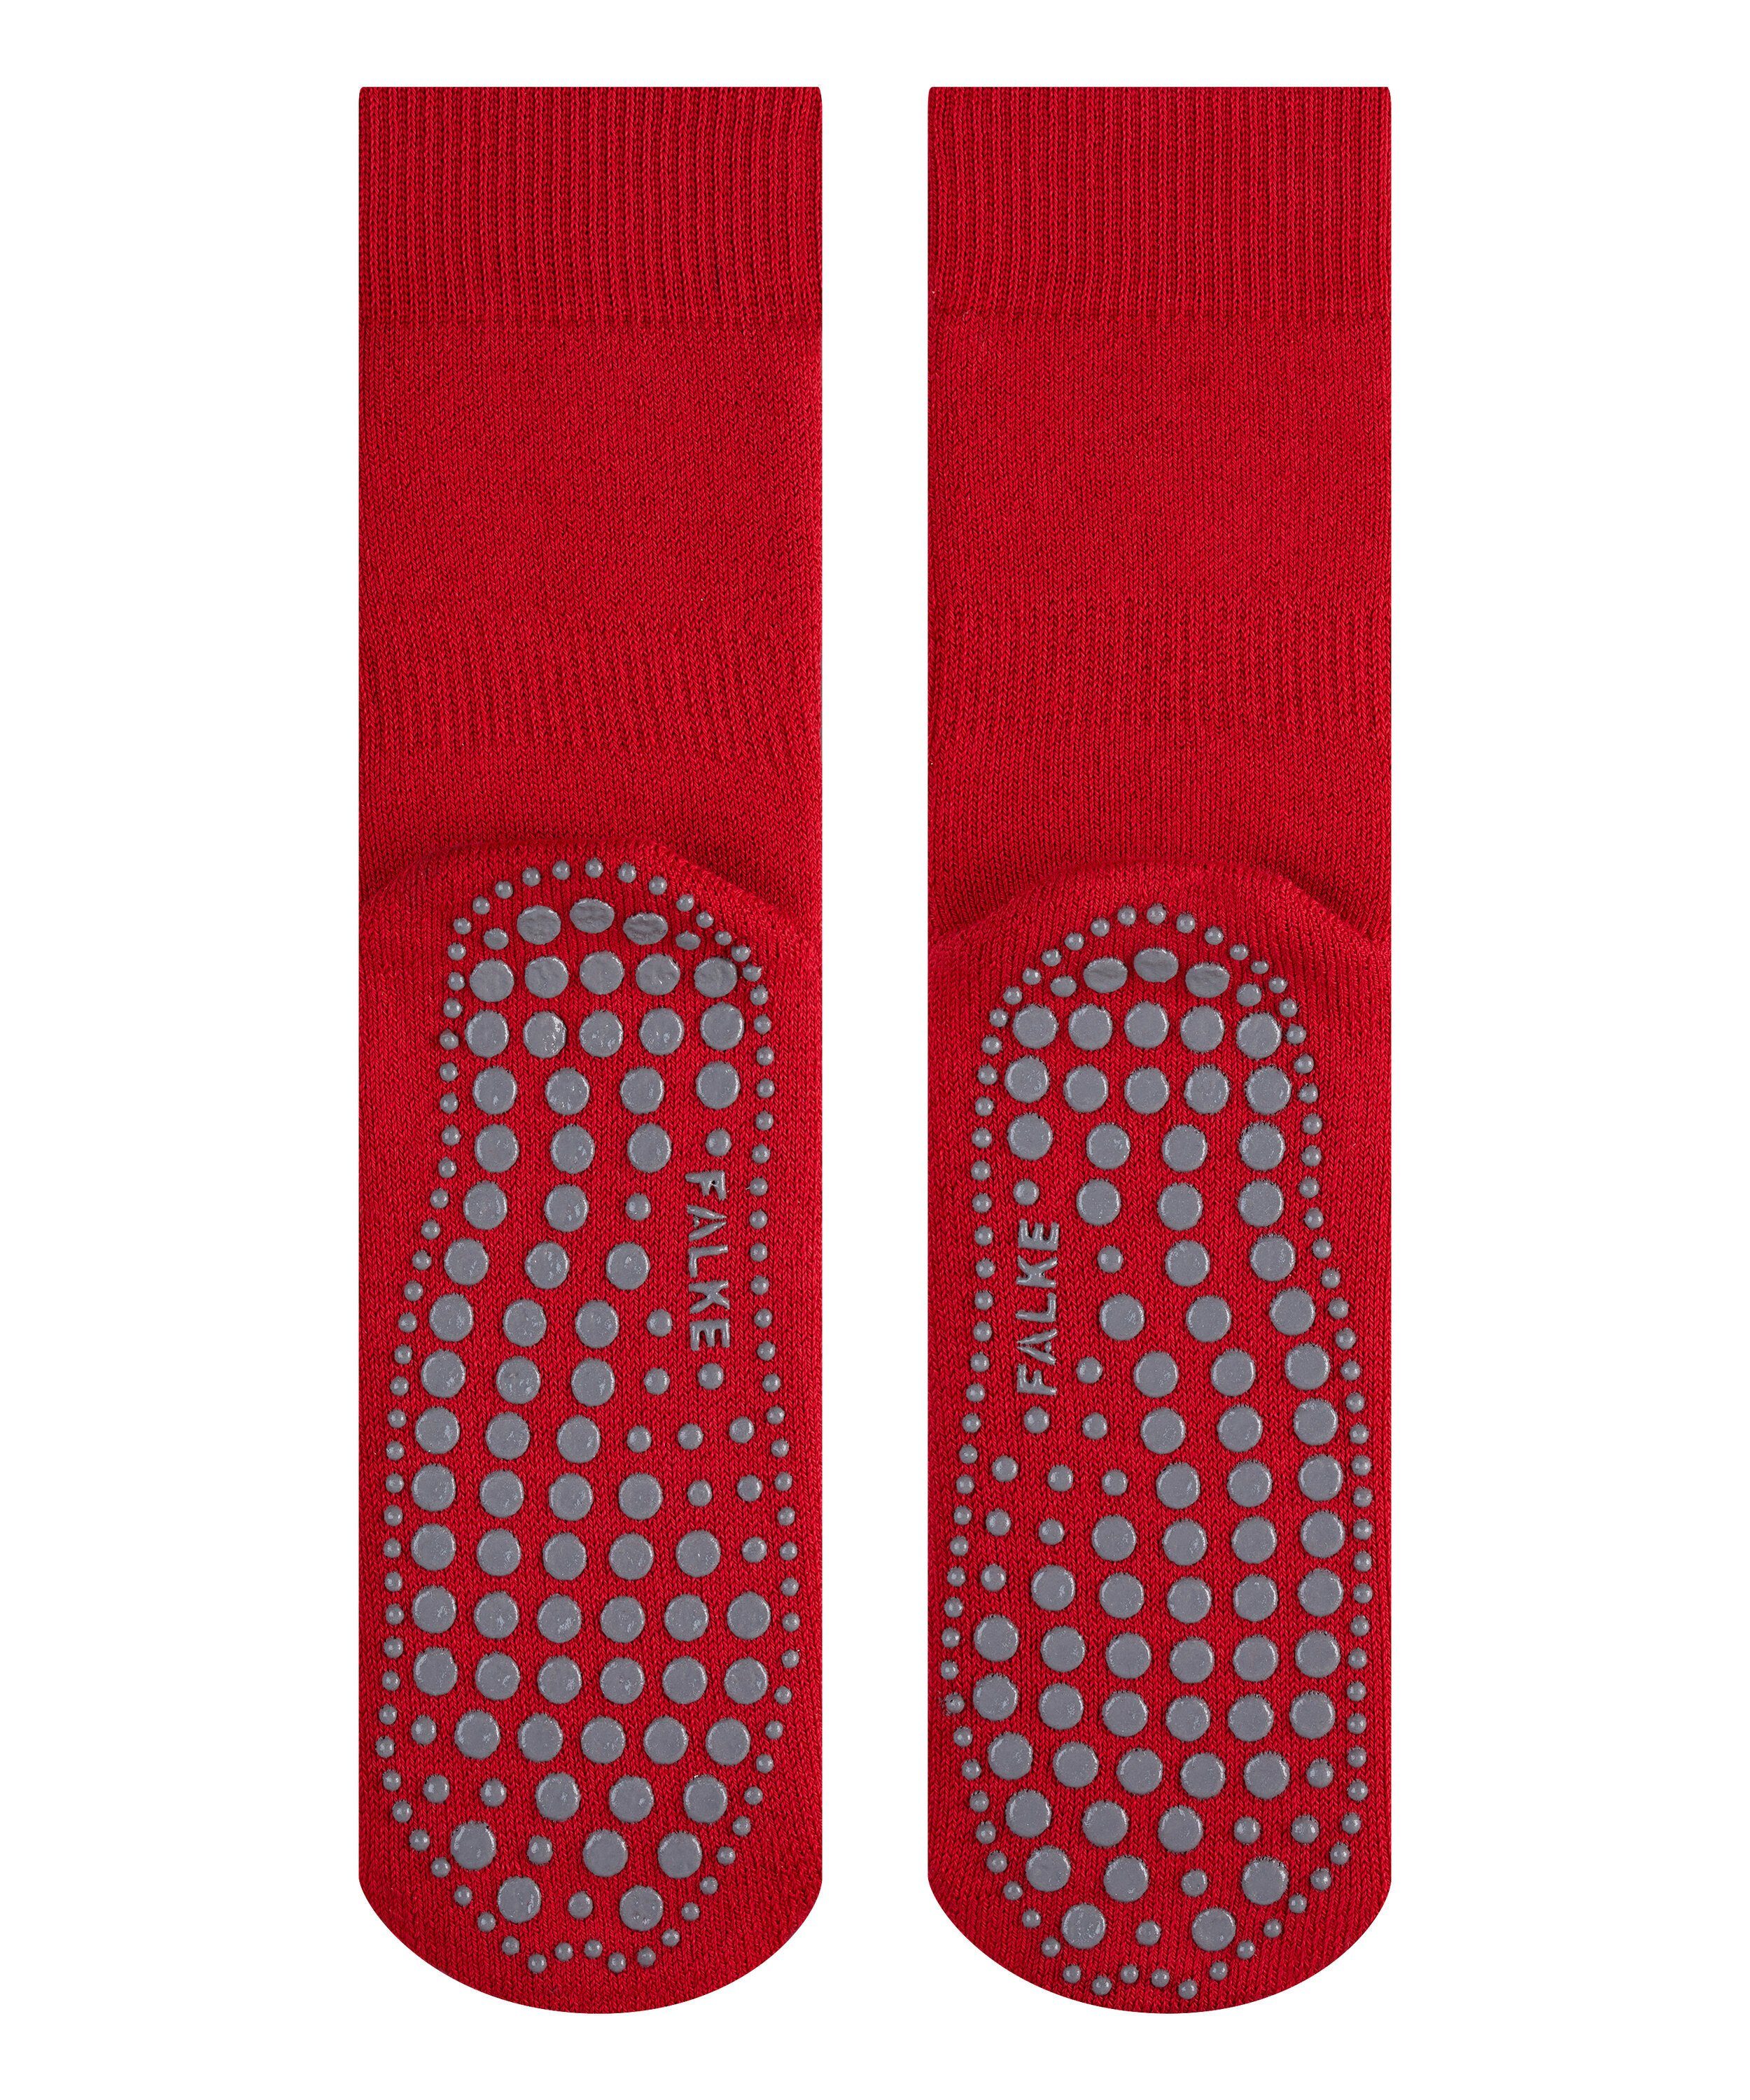 Socken (1-Paar) Homepads (8280) FALKE scarlet